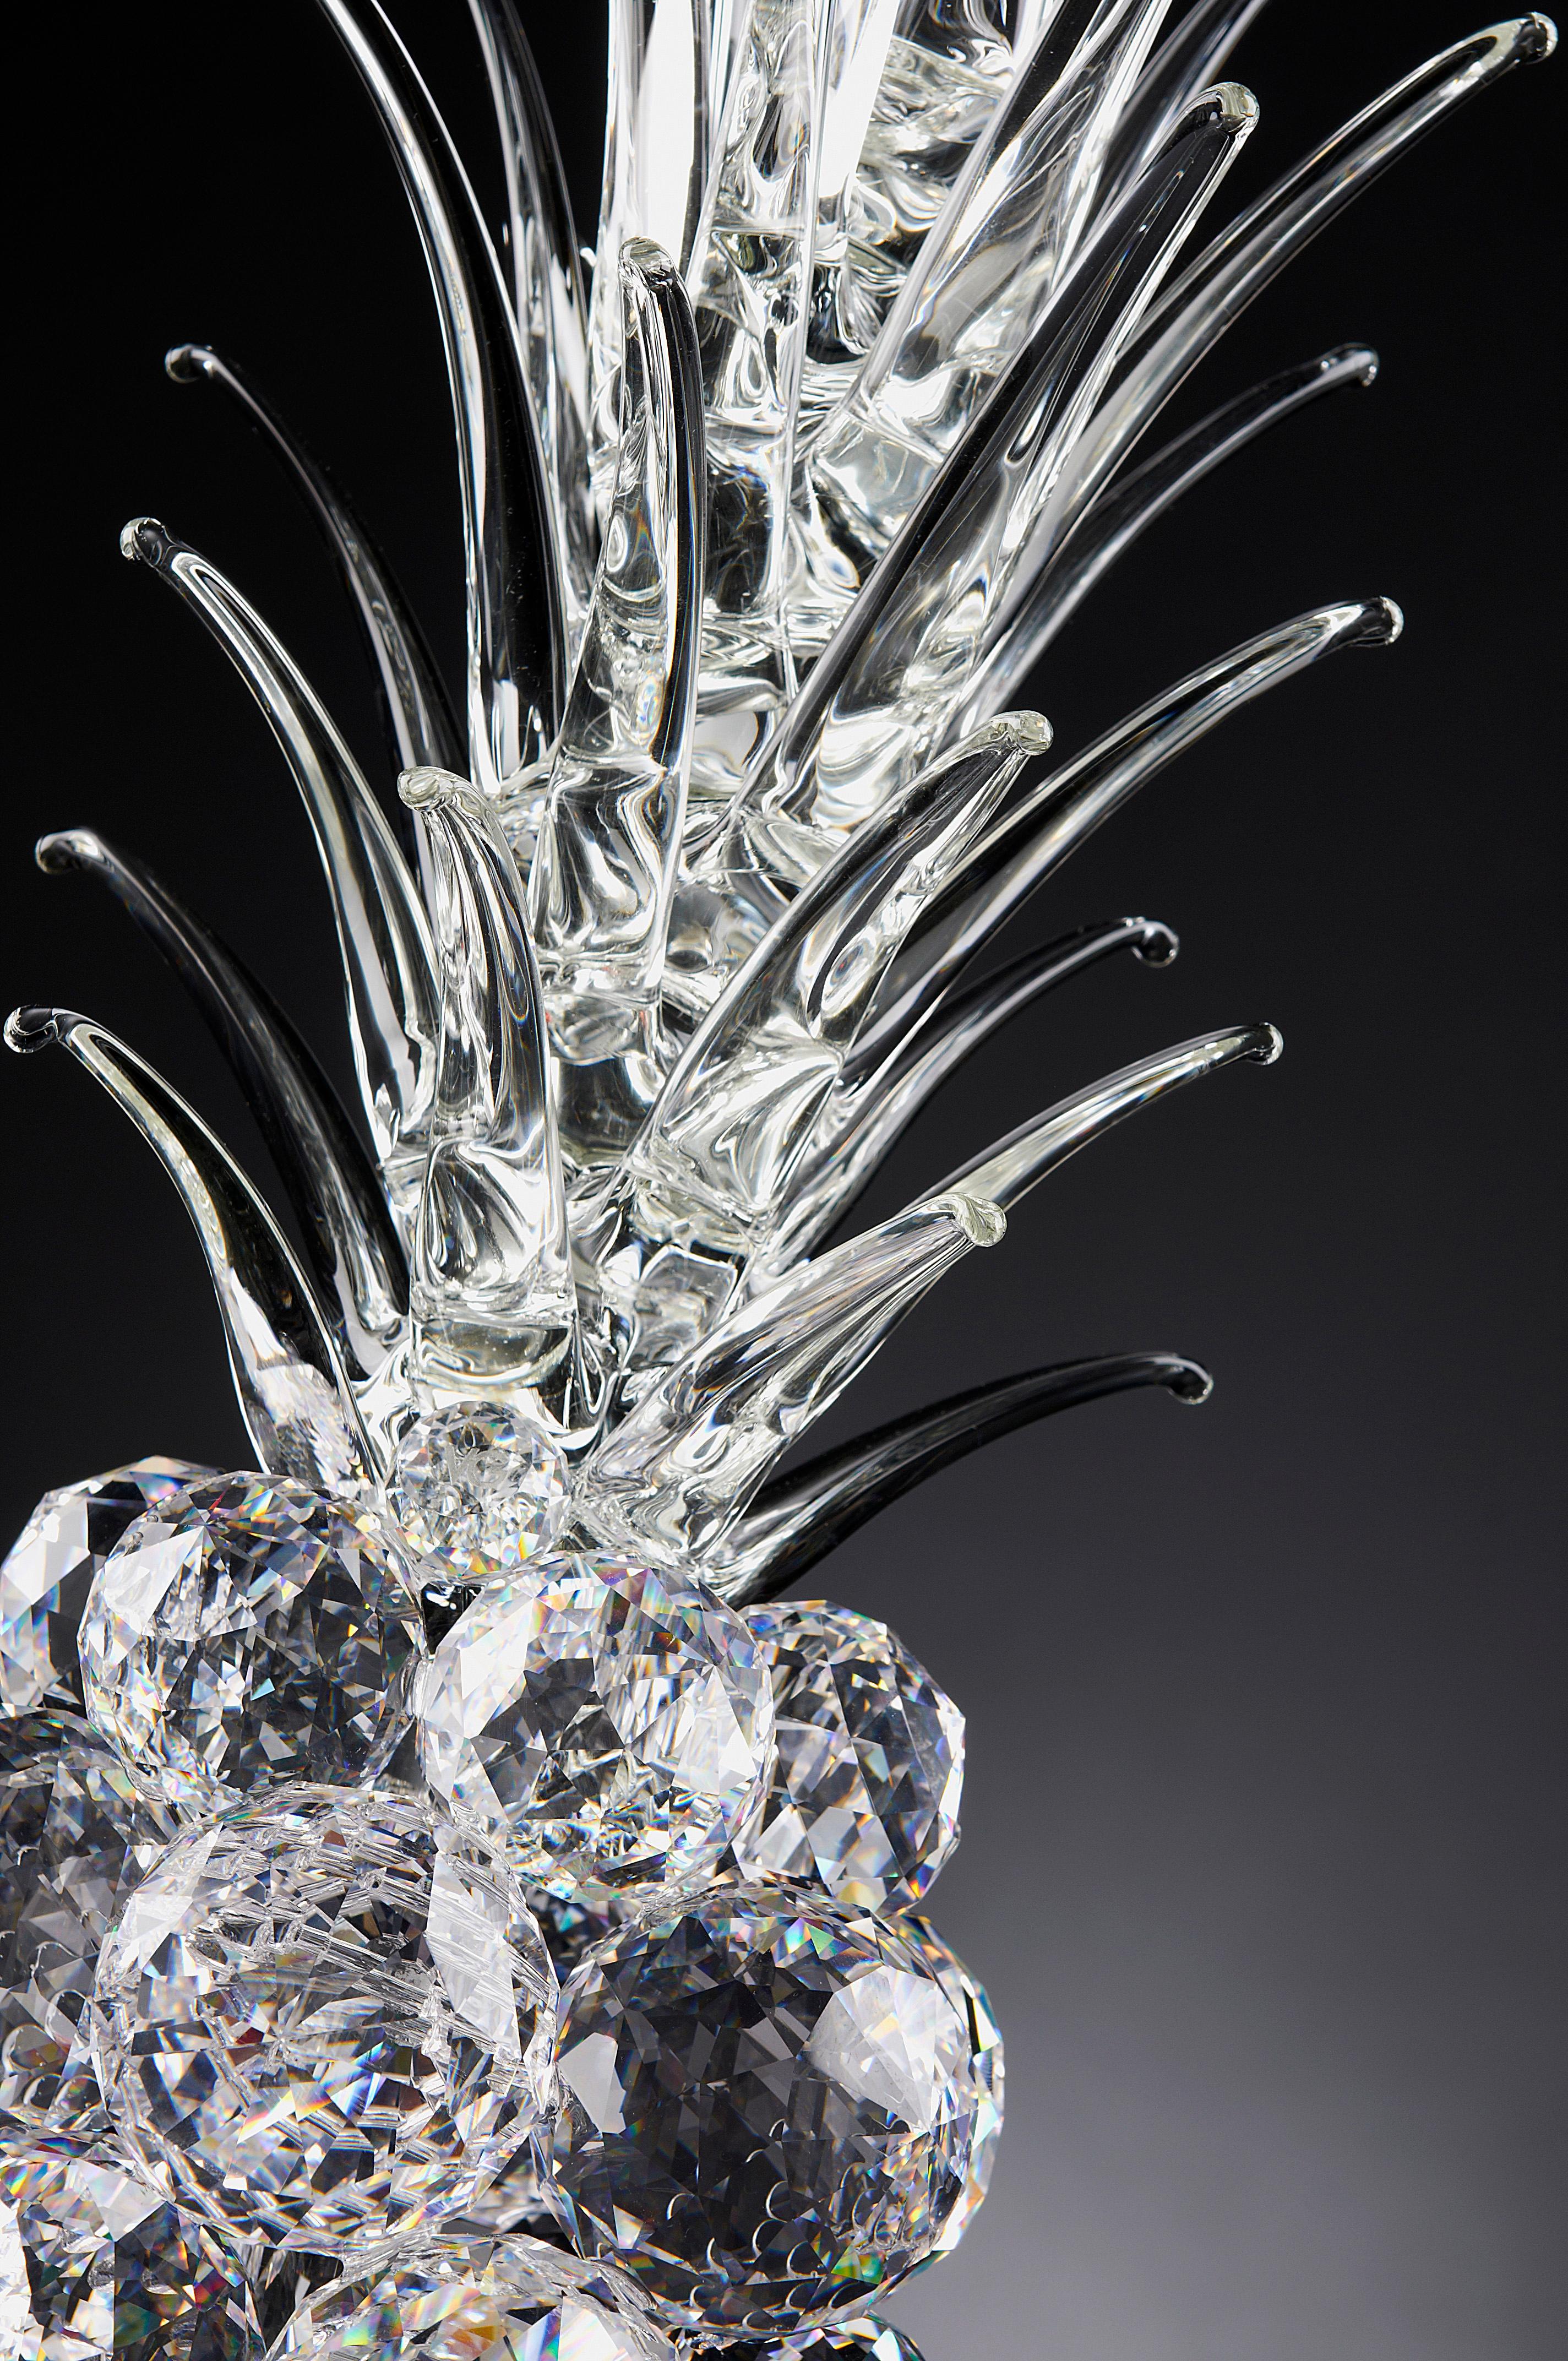 Der Charme der Formen wird durch das Material, aus dem die Kollektion besteht, noch verstärkt: Glas. 
Transparenz, Leichtigkeit und Glanz treffen auf das Design und verwandeln sich in skulpturale Objekte von seltener künstlerischer Pracht,